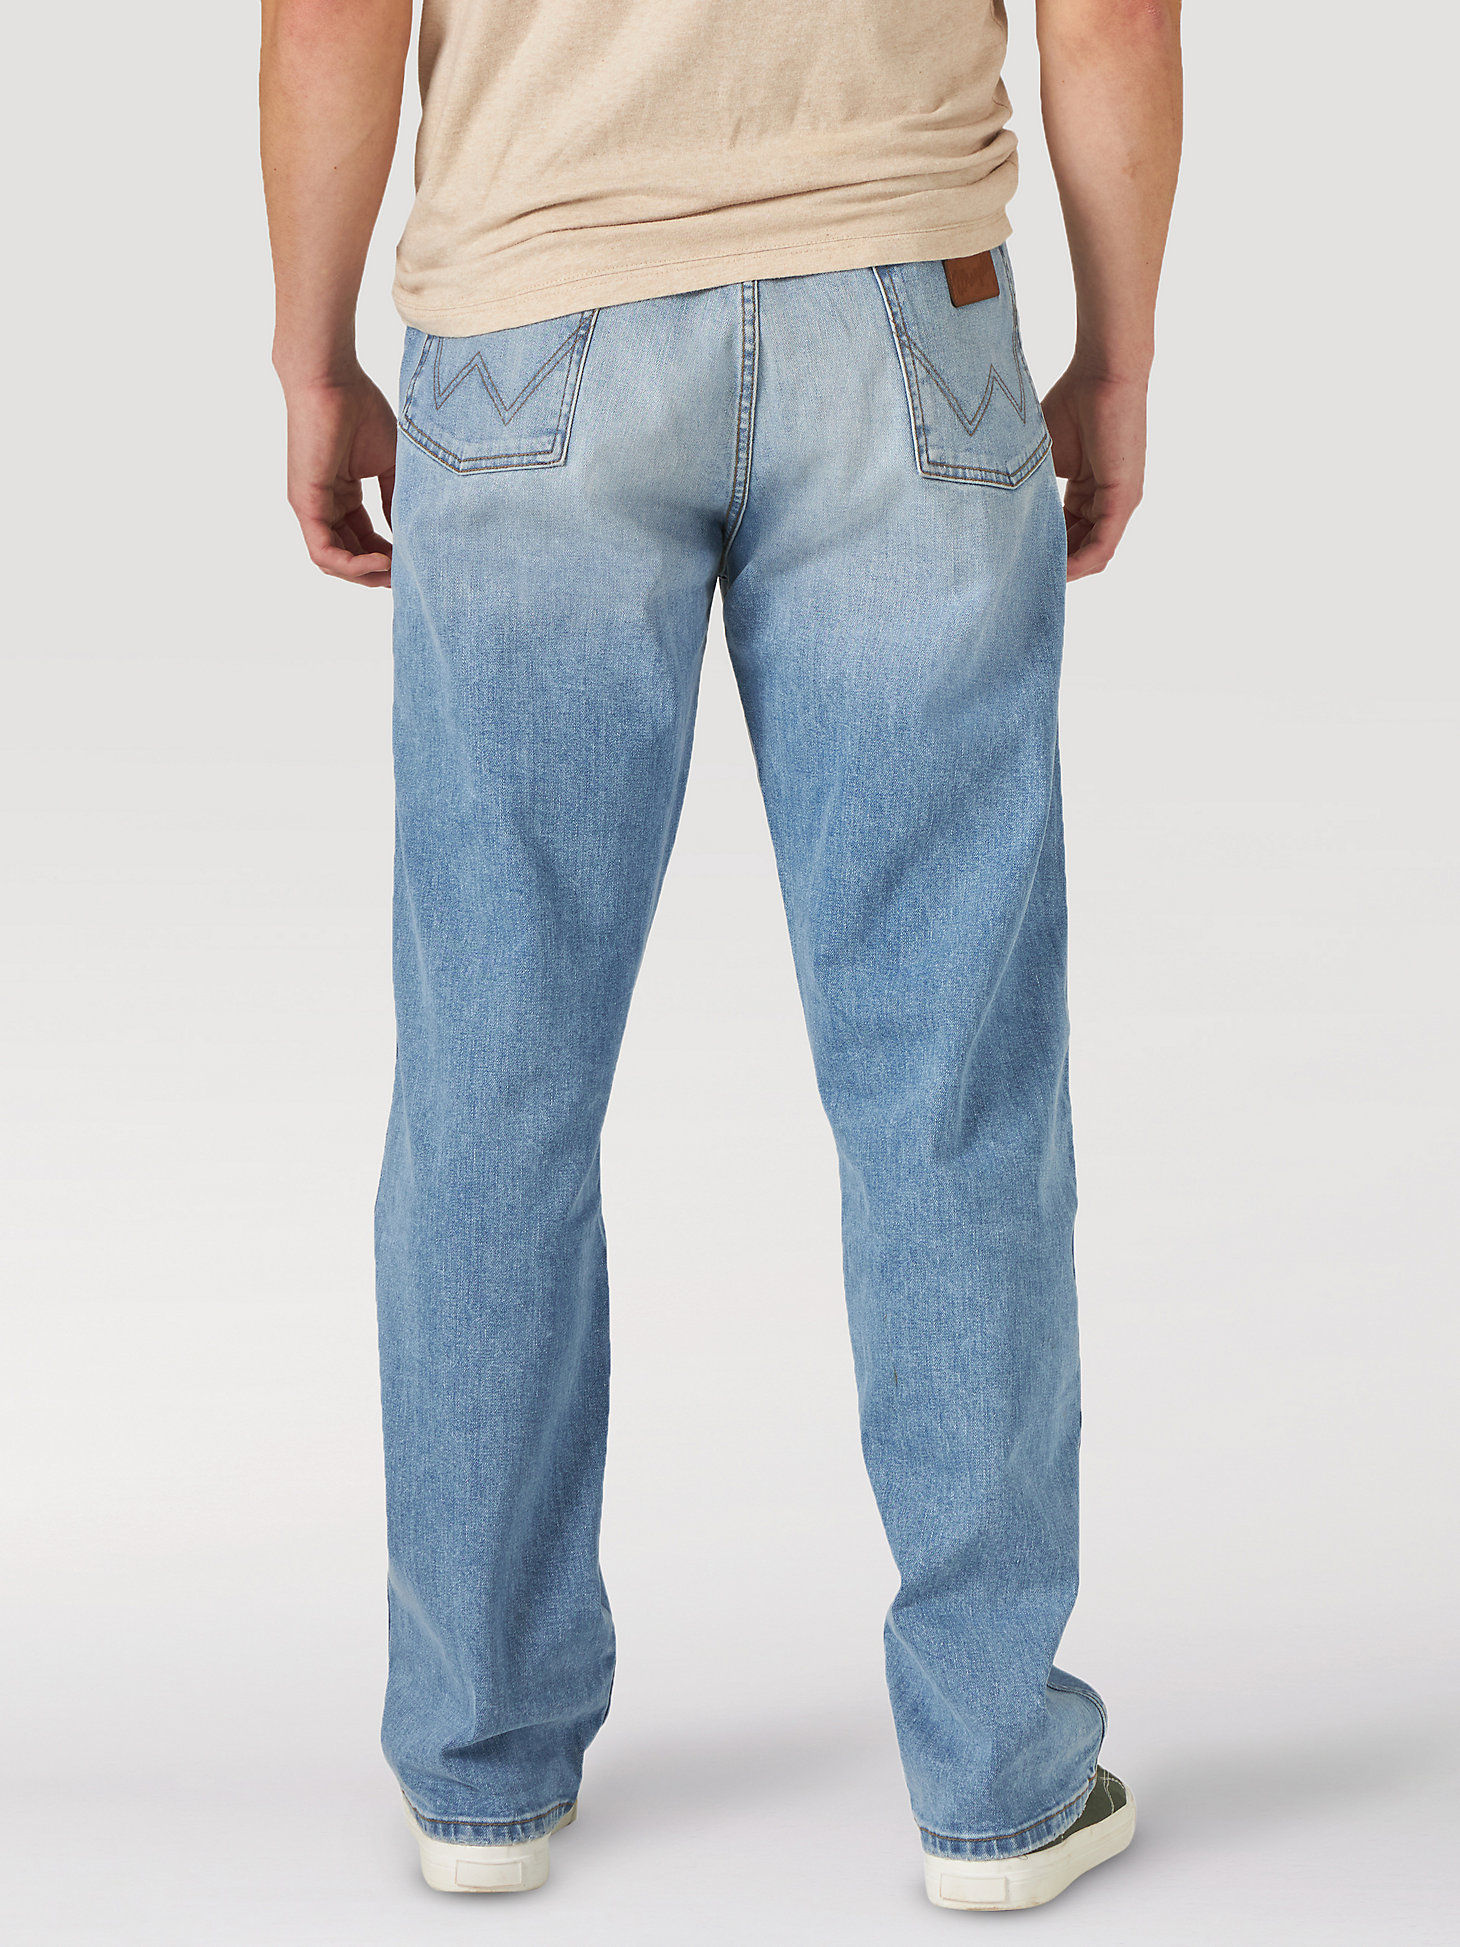 Men's Wrangler® Heritage Redding Loose Fit Jean in Sunshine Blue alternative view 8